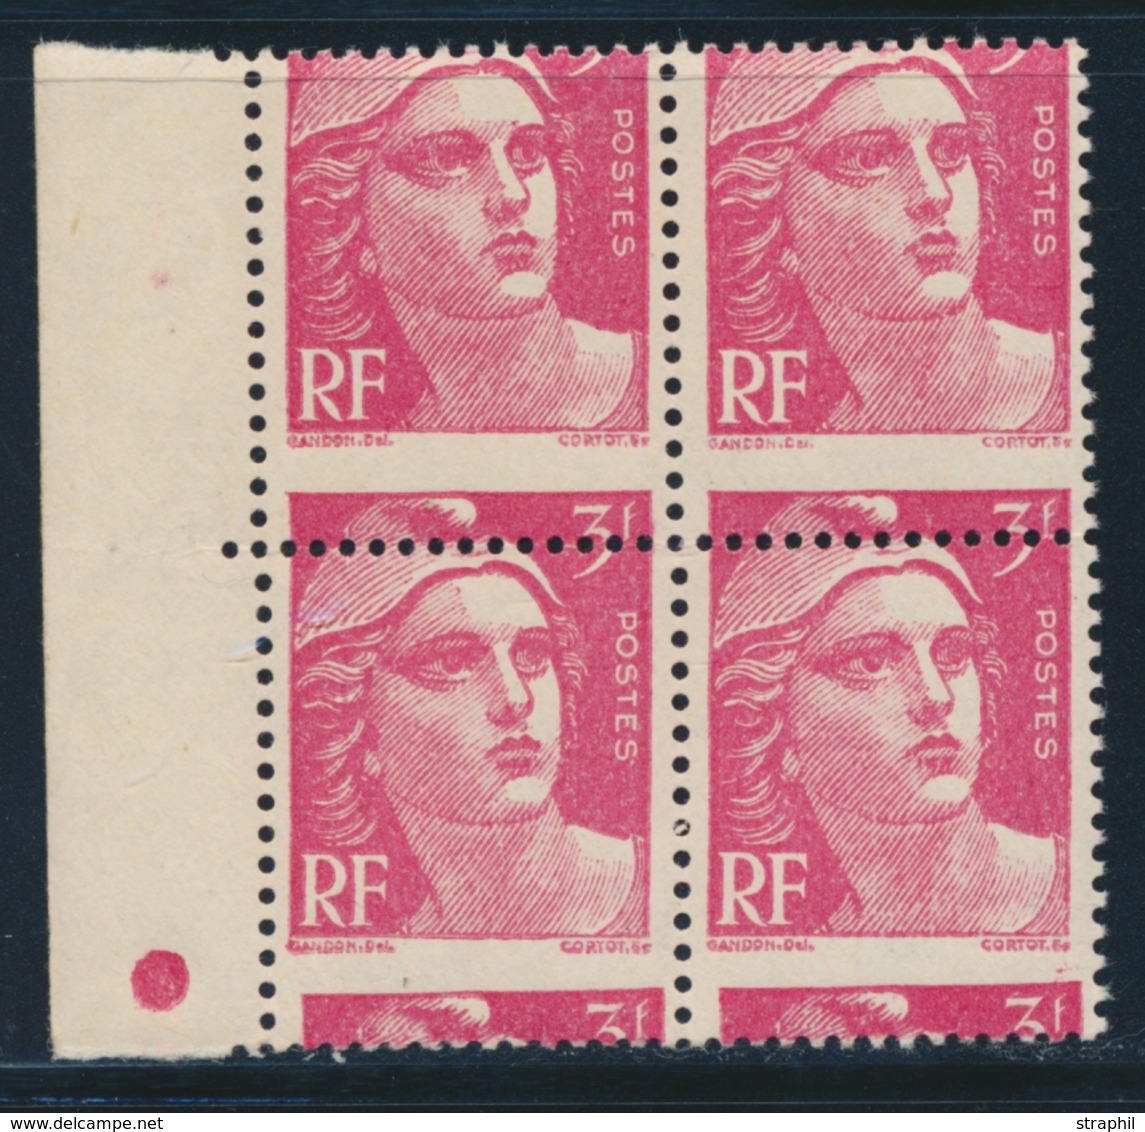 ** VARIETES - ** - N°716 - Bloc De 4 - Piquage à Cheval - TB - Unused Stamps